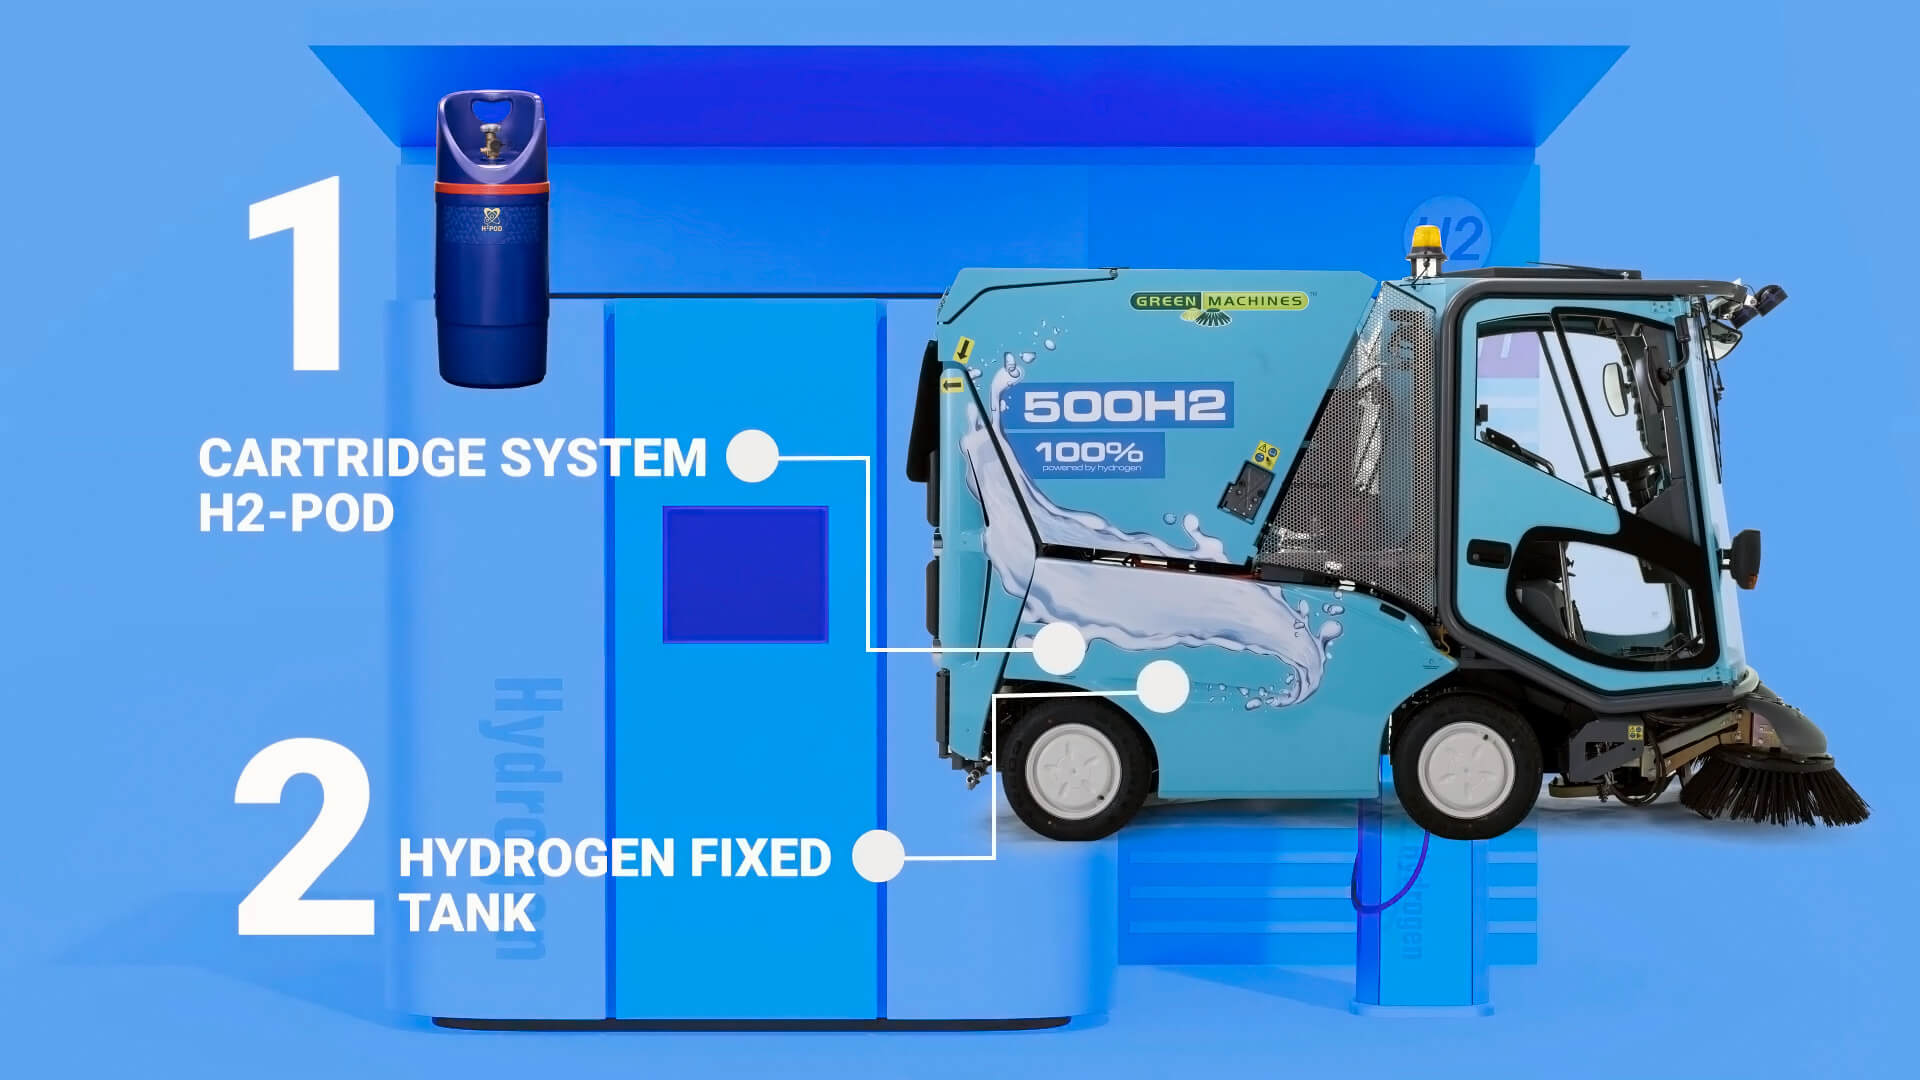 Уборочная машина GM 500H2 оснащена инновационной системой замены водородных картриджей H2-Pod